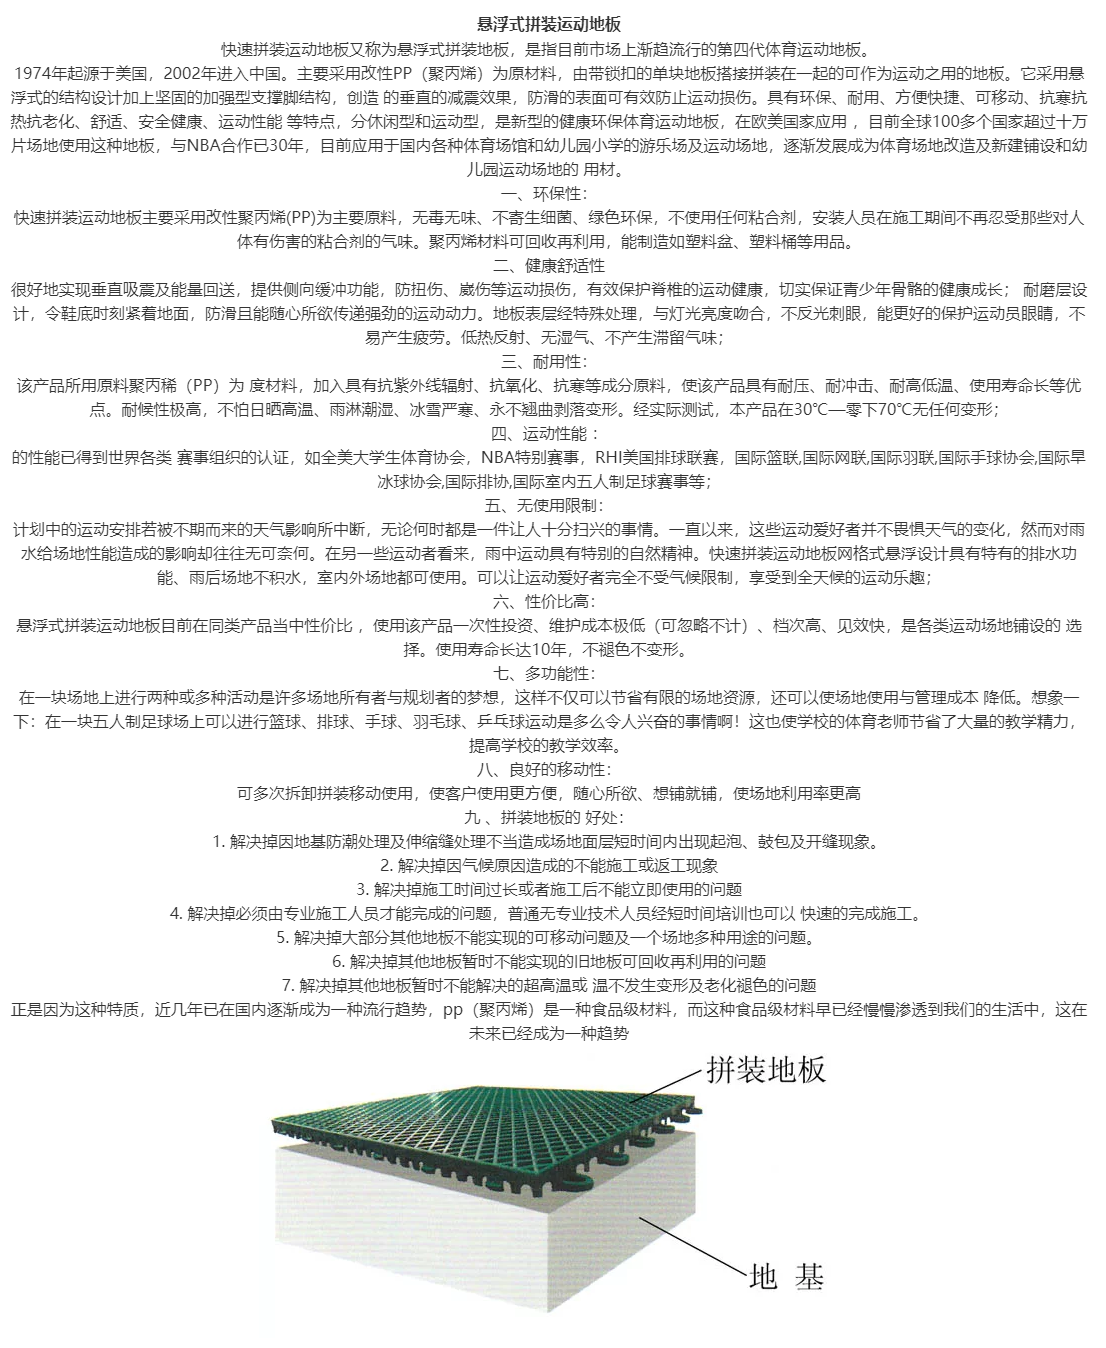 悬浮式拼装运动地板,贵州峰畅建筑工程有限公司.png